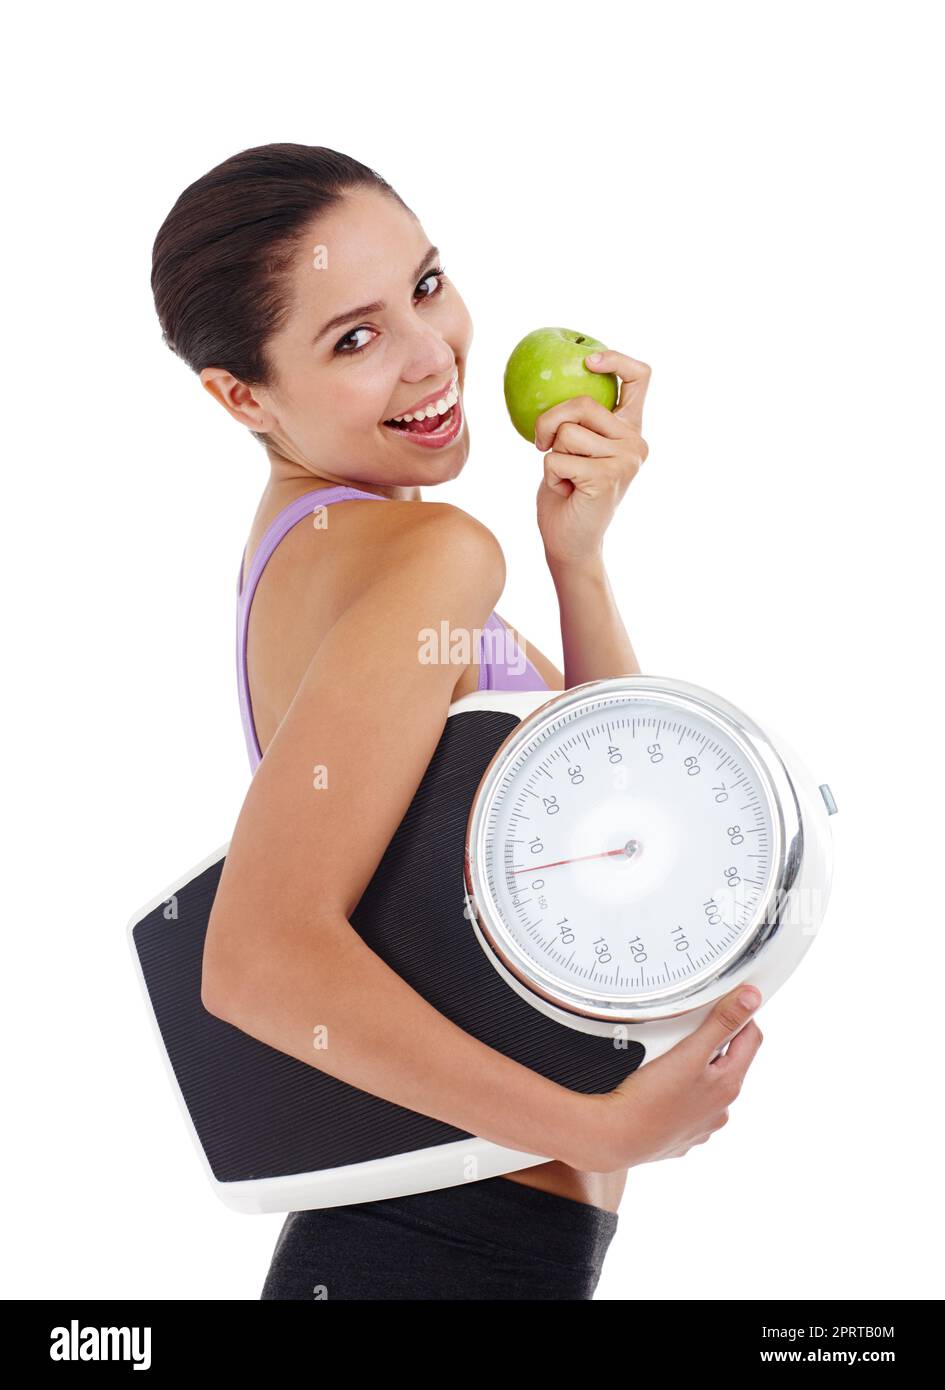 Un mode de vie sain signifie que la perte de poids est facile. Photo studio d'une jeune femme attrayante vêtue de vêtements de gym portant une pomme et une balance. Banque D'Images